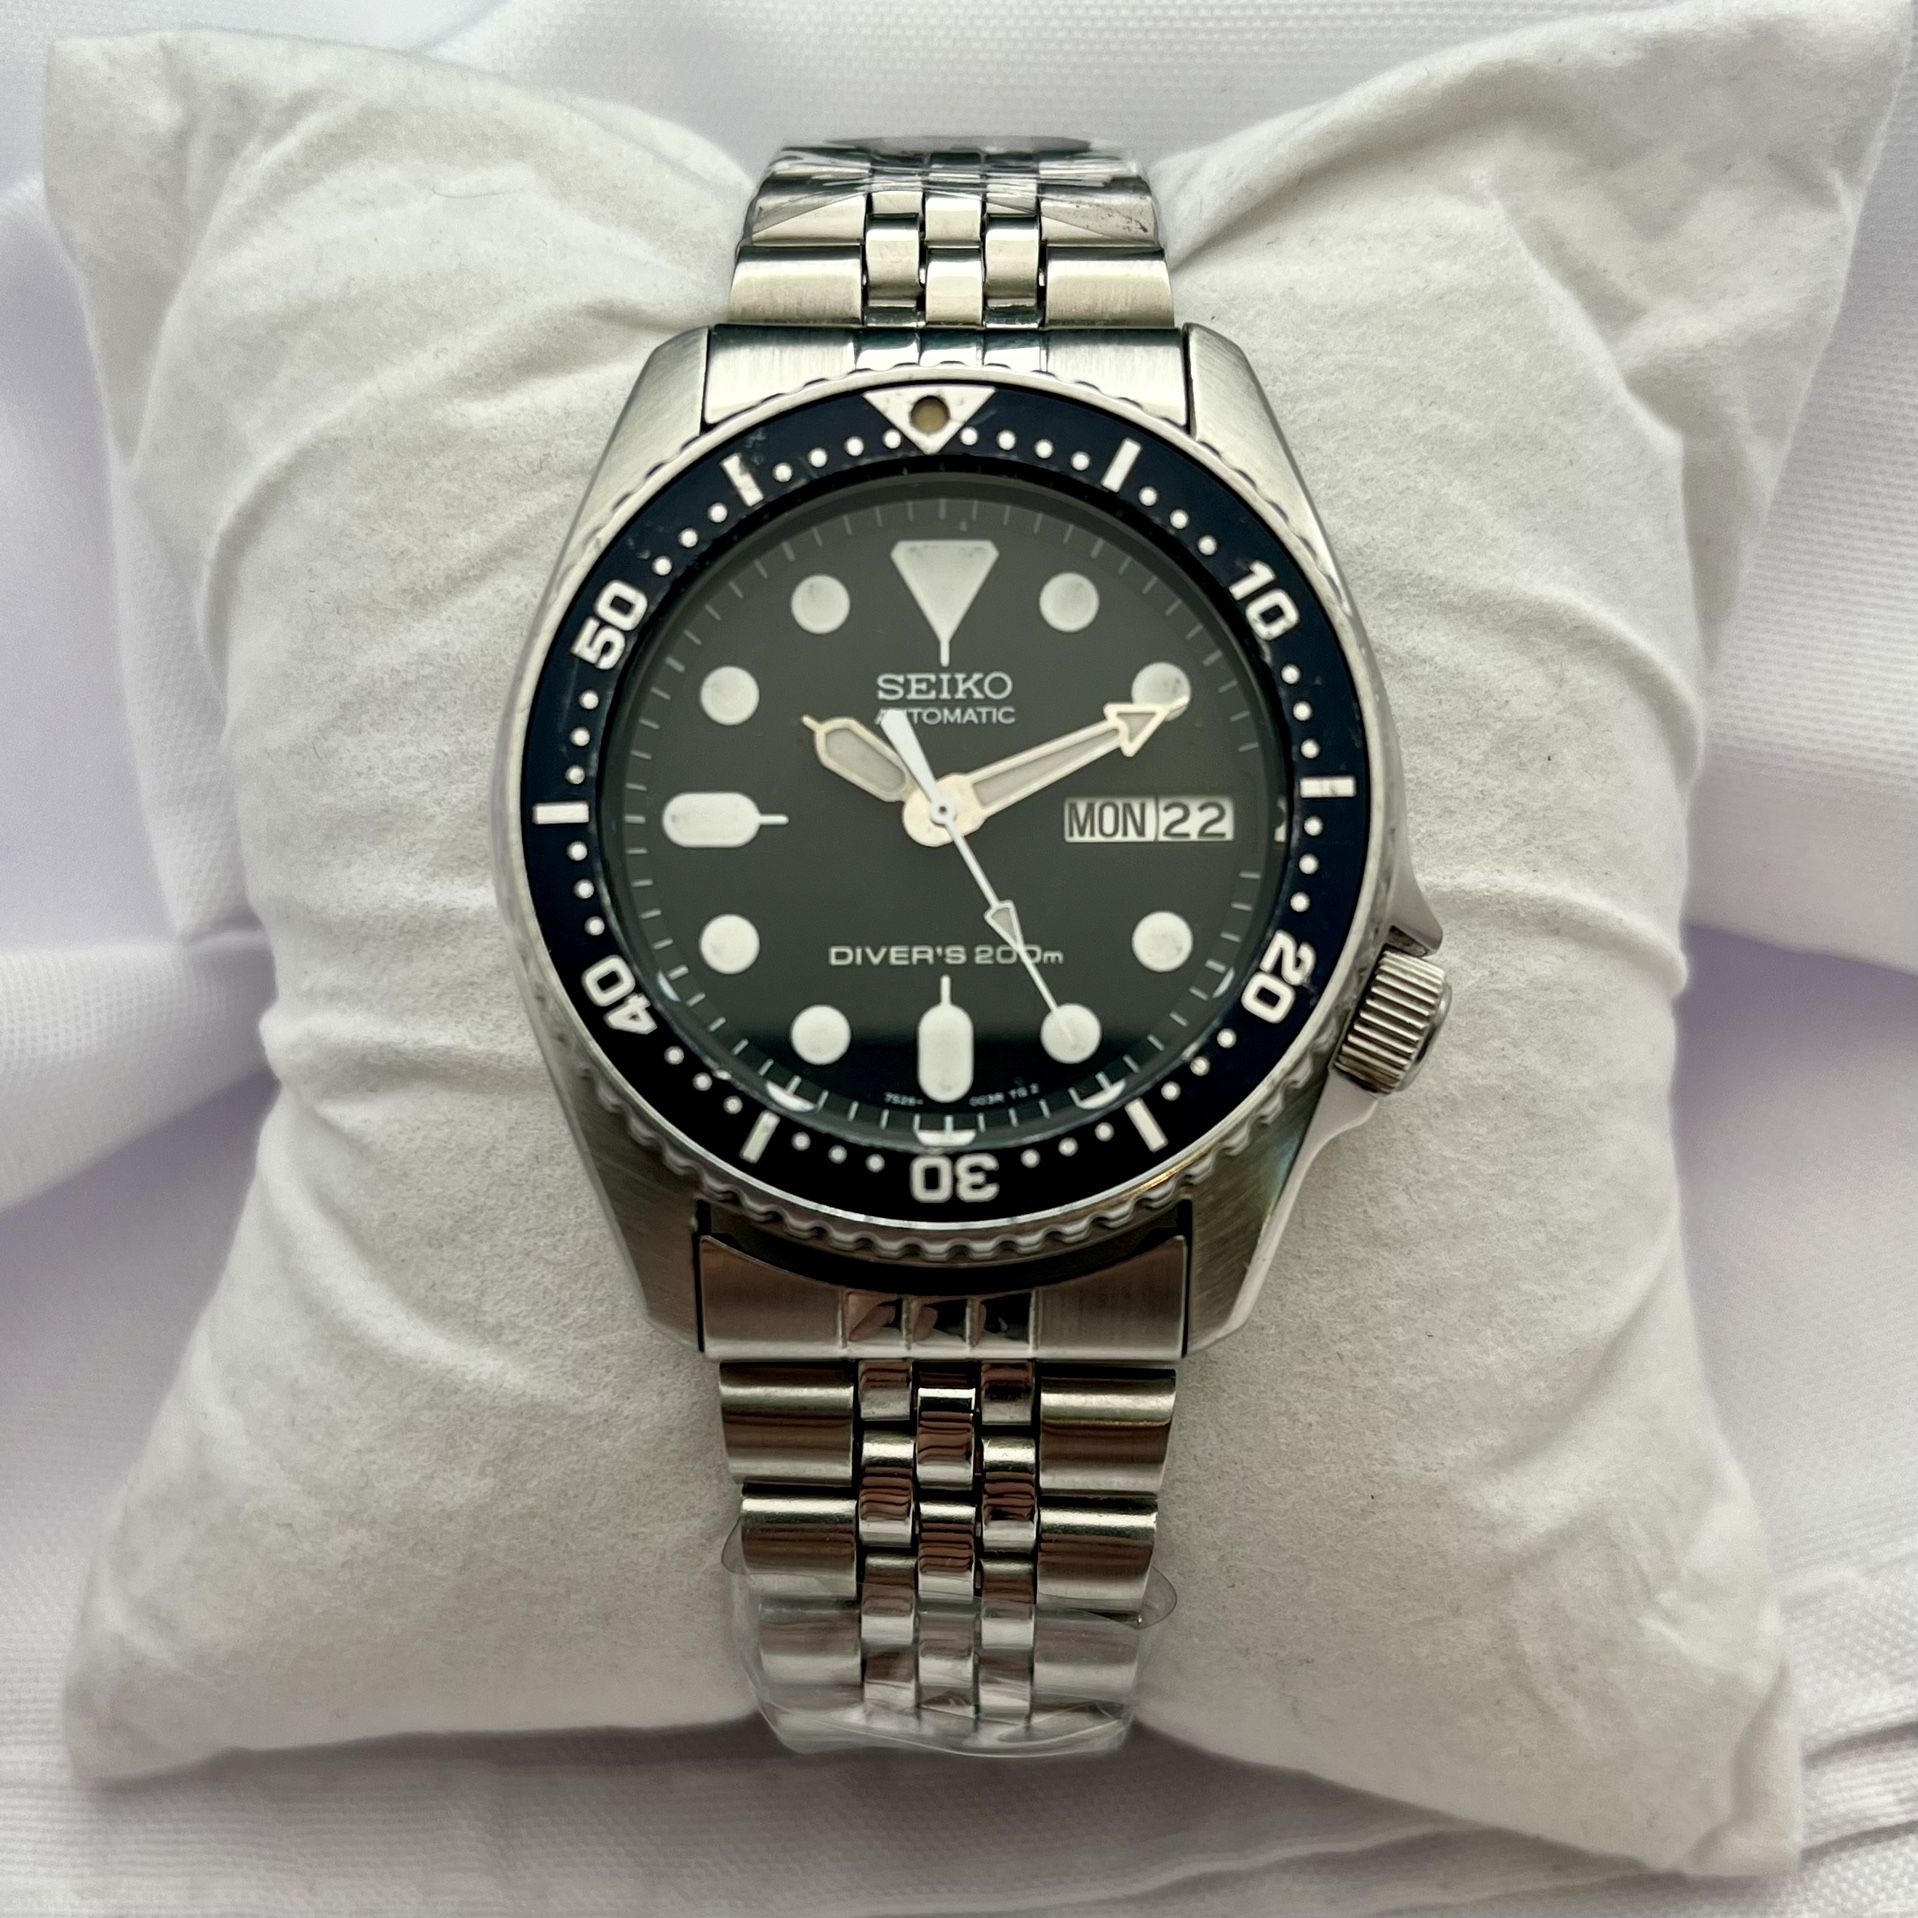 Seiko SKX013 Original Diver Watch 